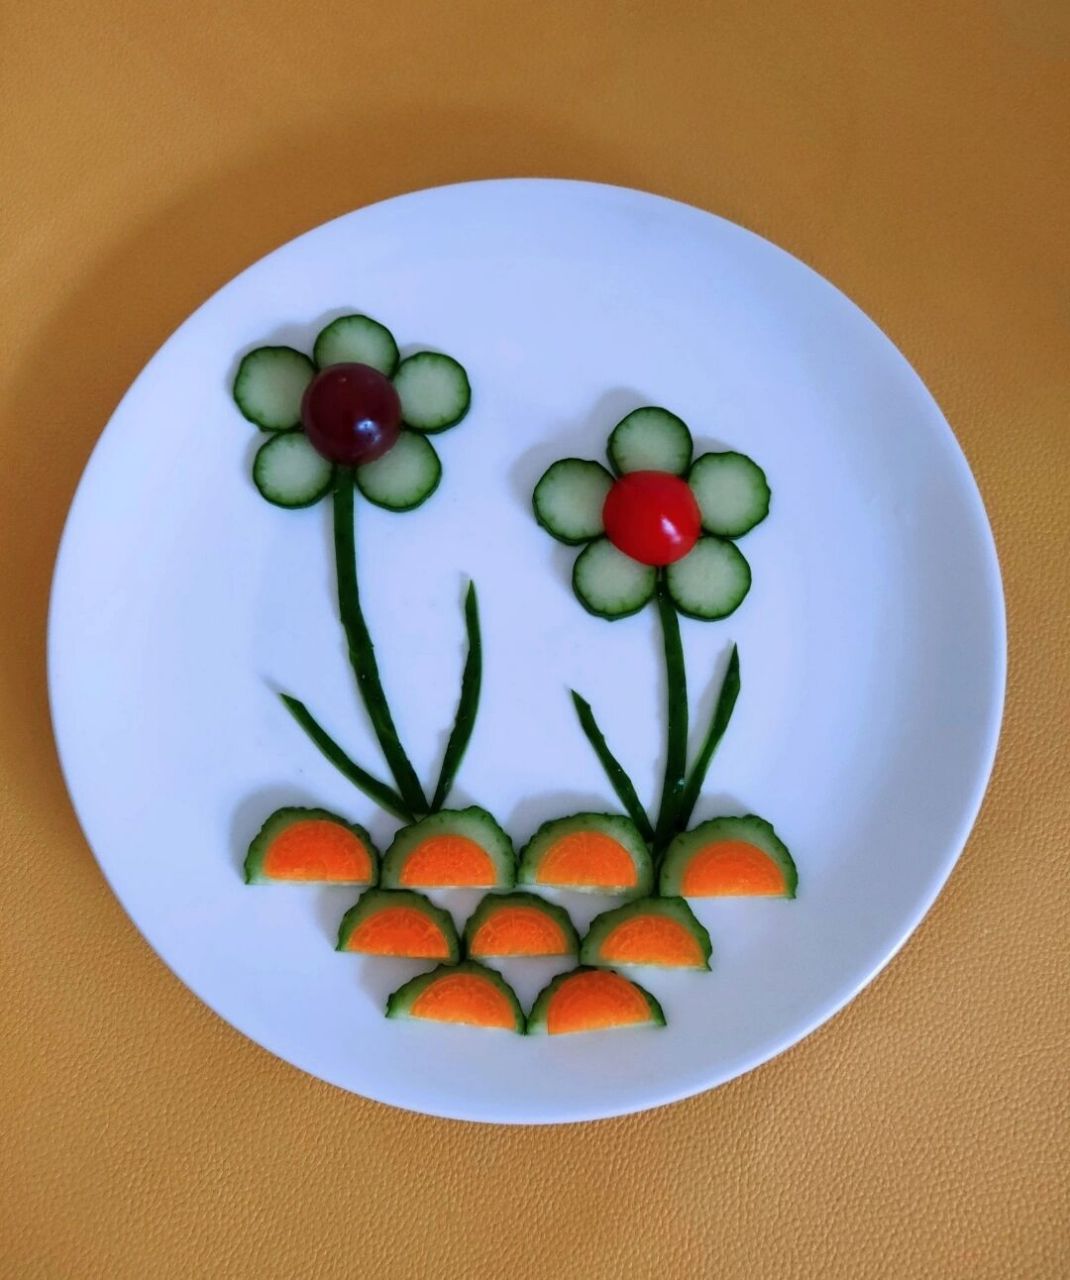 蔬菜水果拼盘教案图片